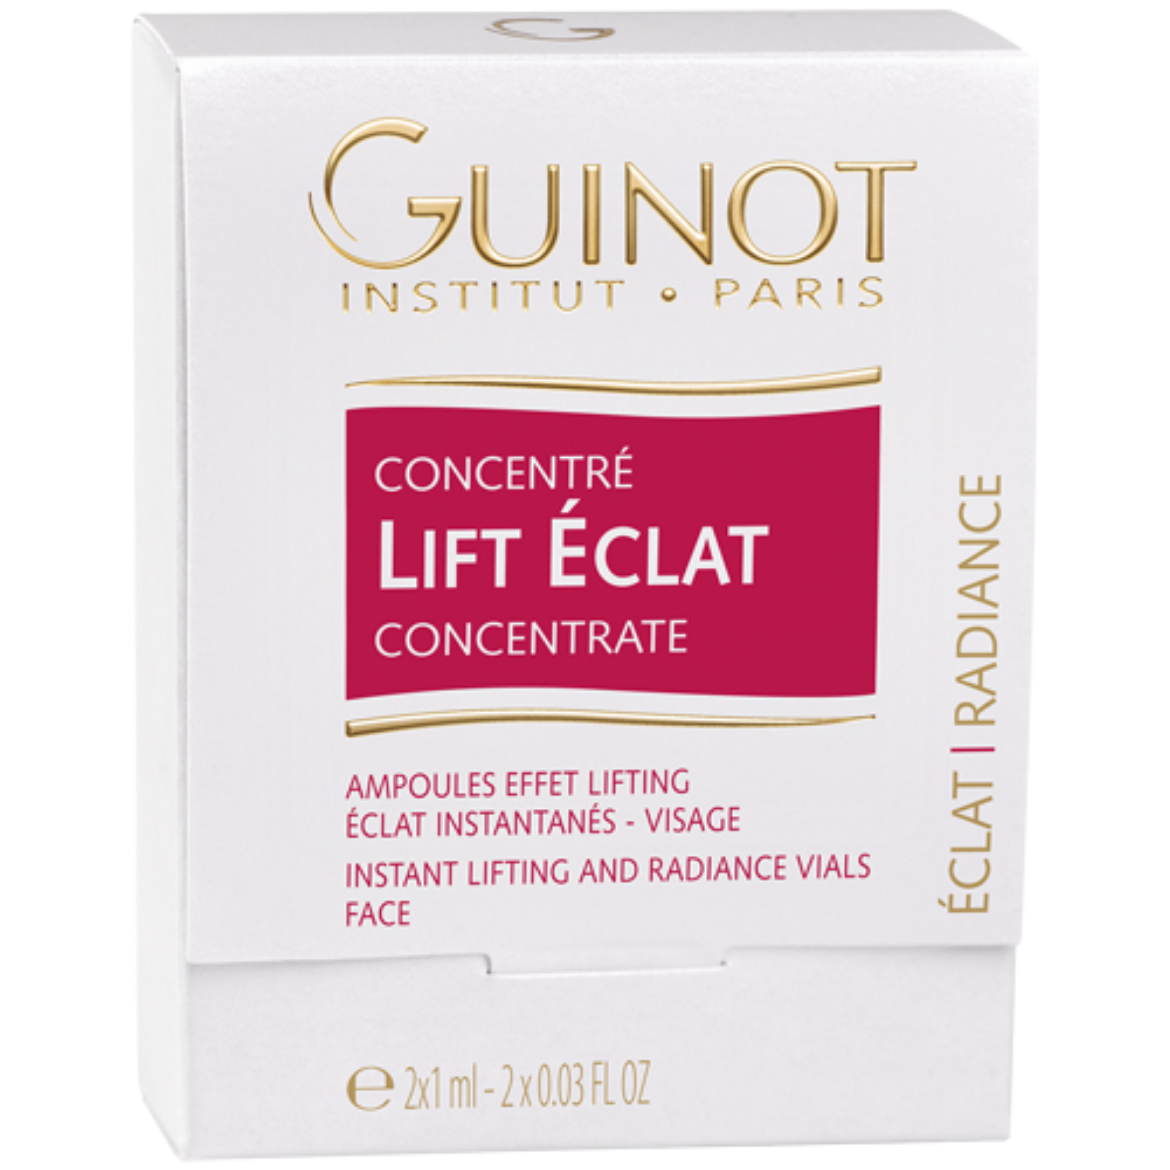 Immagine di Guinot Concentré Lift Eclat (2 x 1ml)